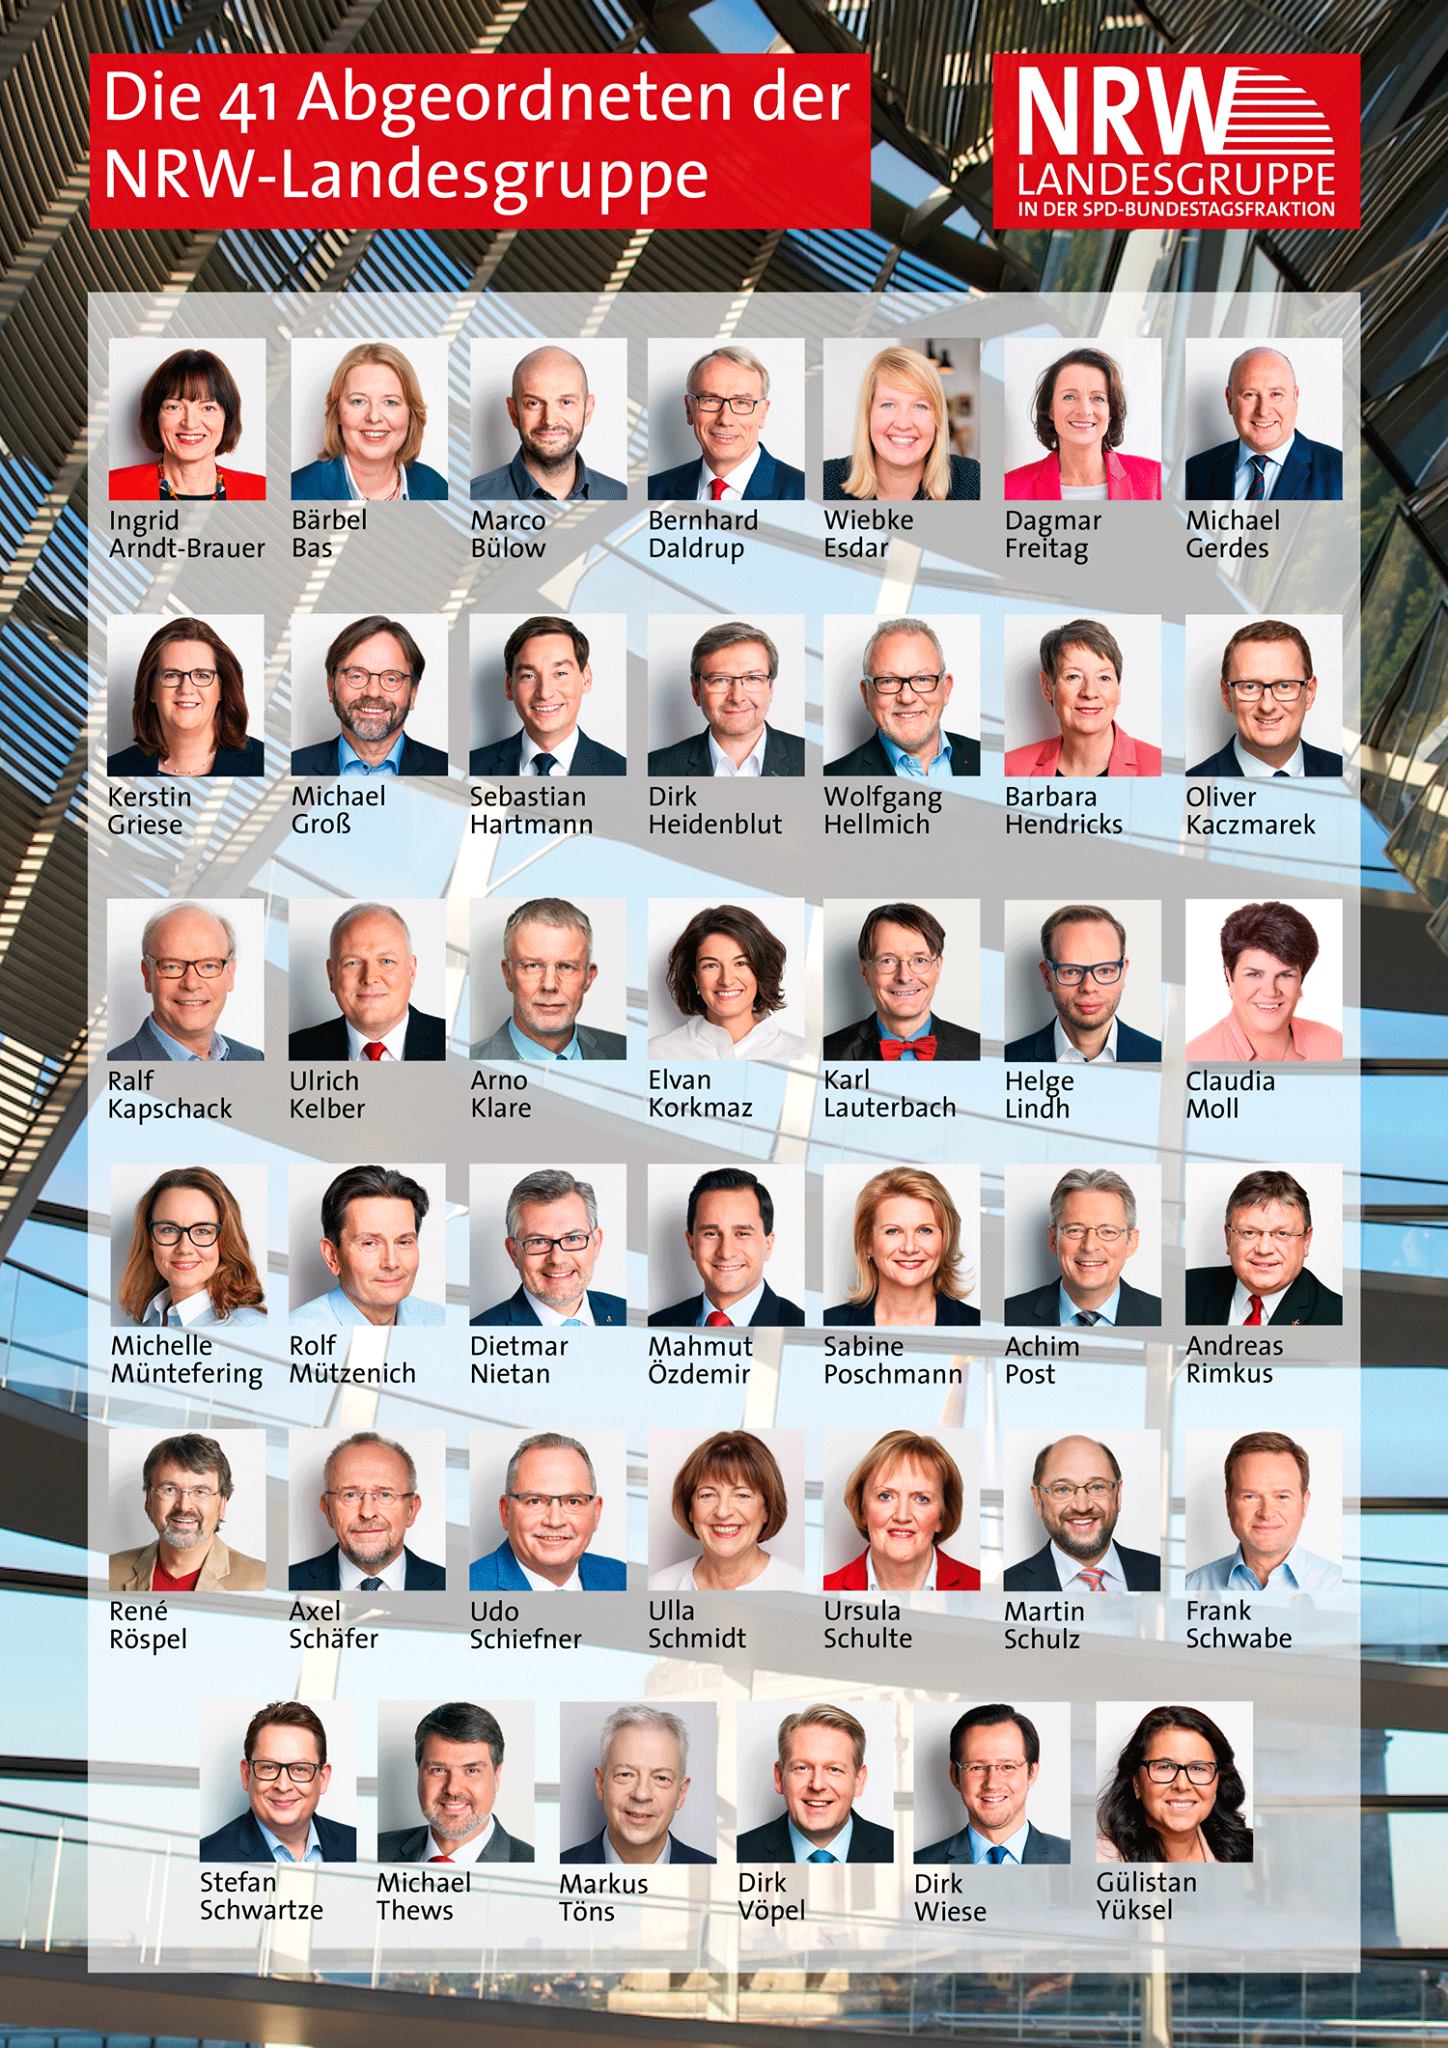 Übersicht der 41 Abgeordneten der NRW-Landesgruppe